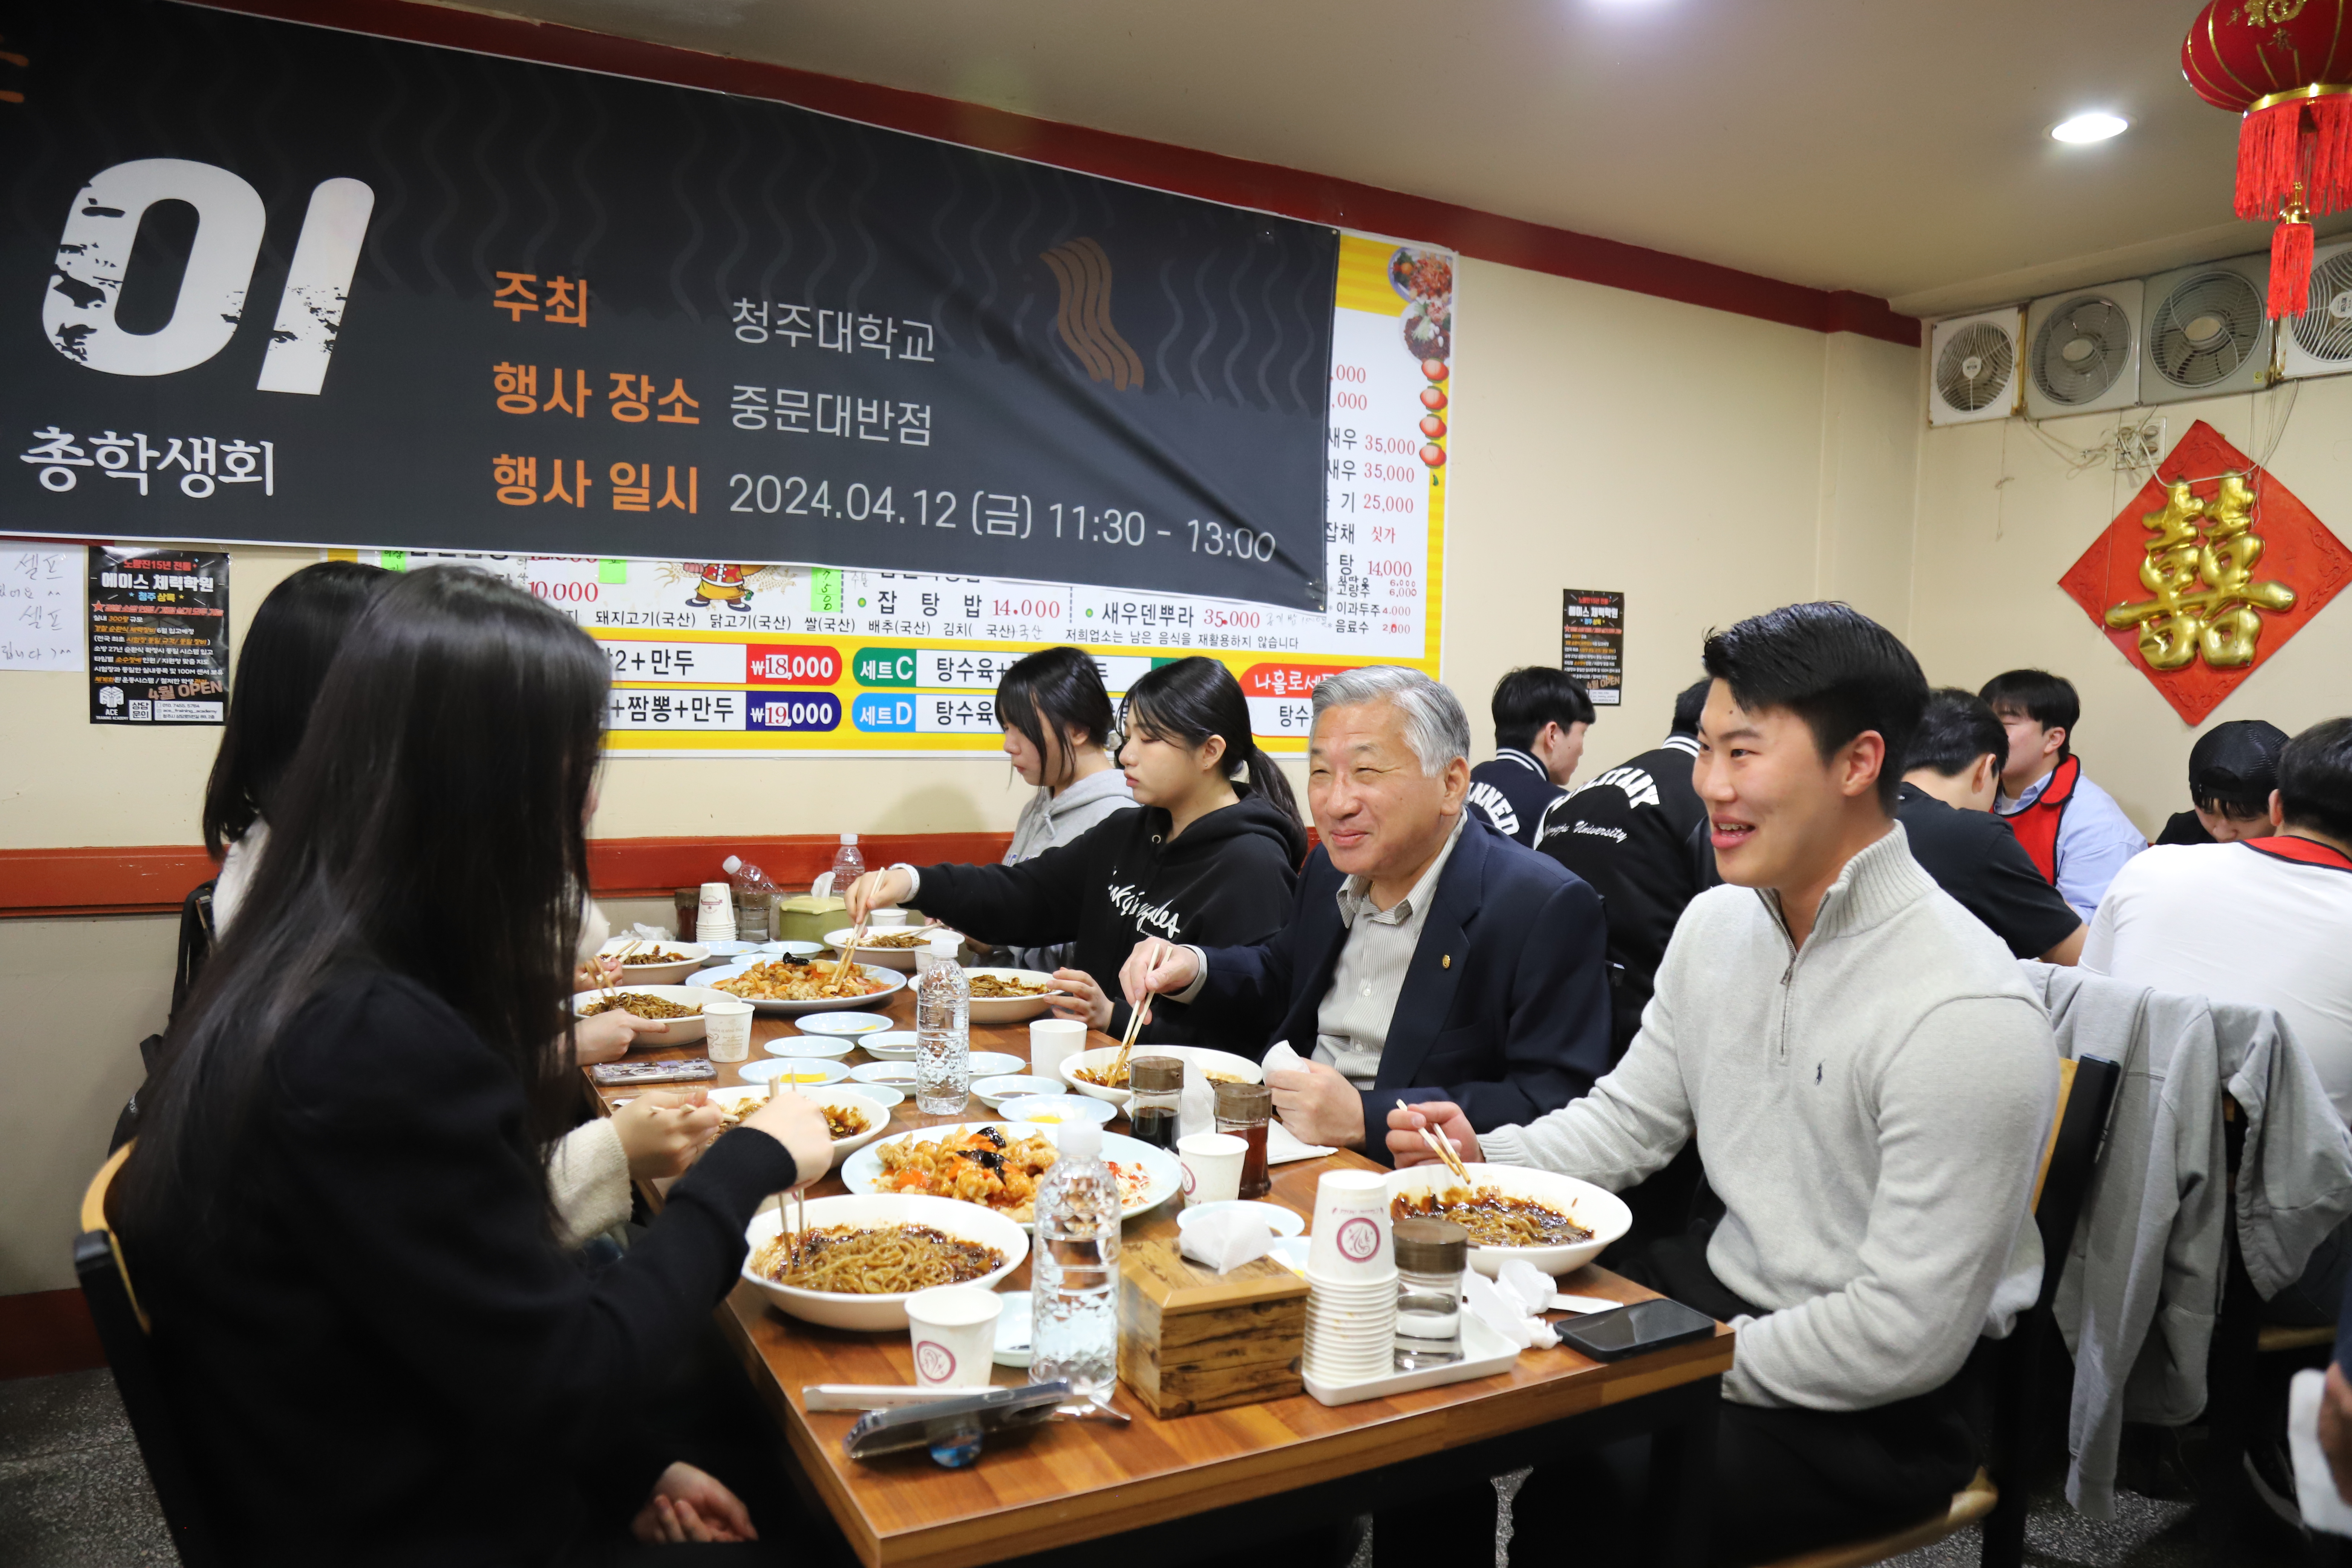 청주대 김윤배 총장(오른쪽 두 번째)이 12일 오후 대학 중문 인근 중국음식점에서 ‘블랙데이’를 맞아 강지혁 총학생회장(오른쪽 첫 번째) 등 학생들과 함께 자장면으로 식사하며 의견을 청취하고 있다.